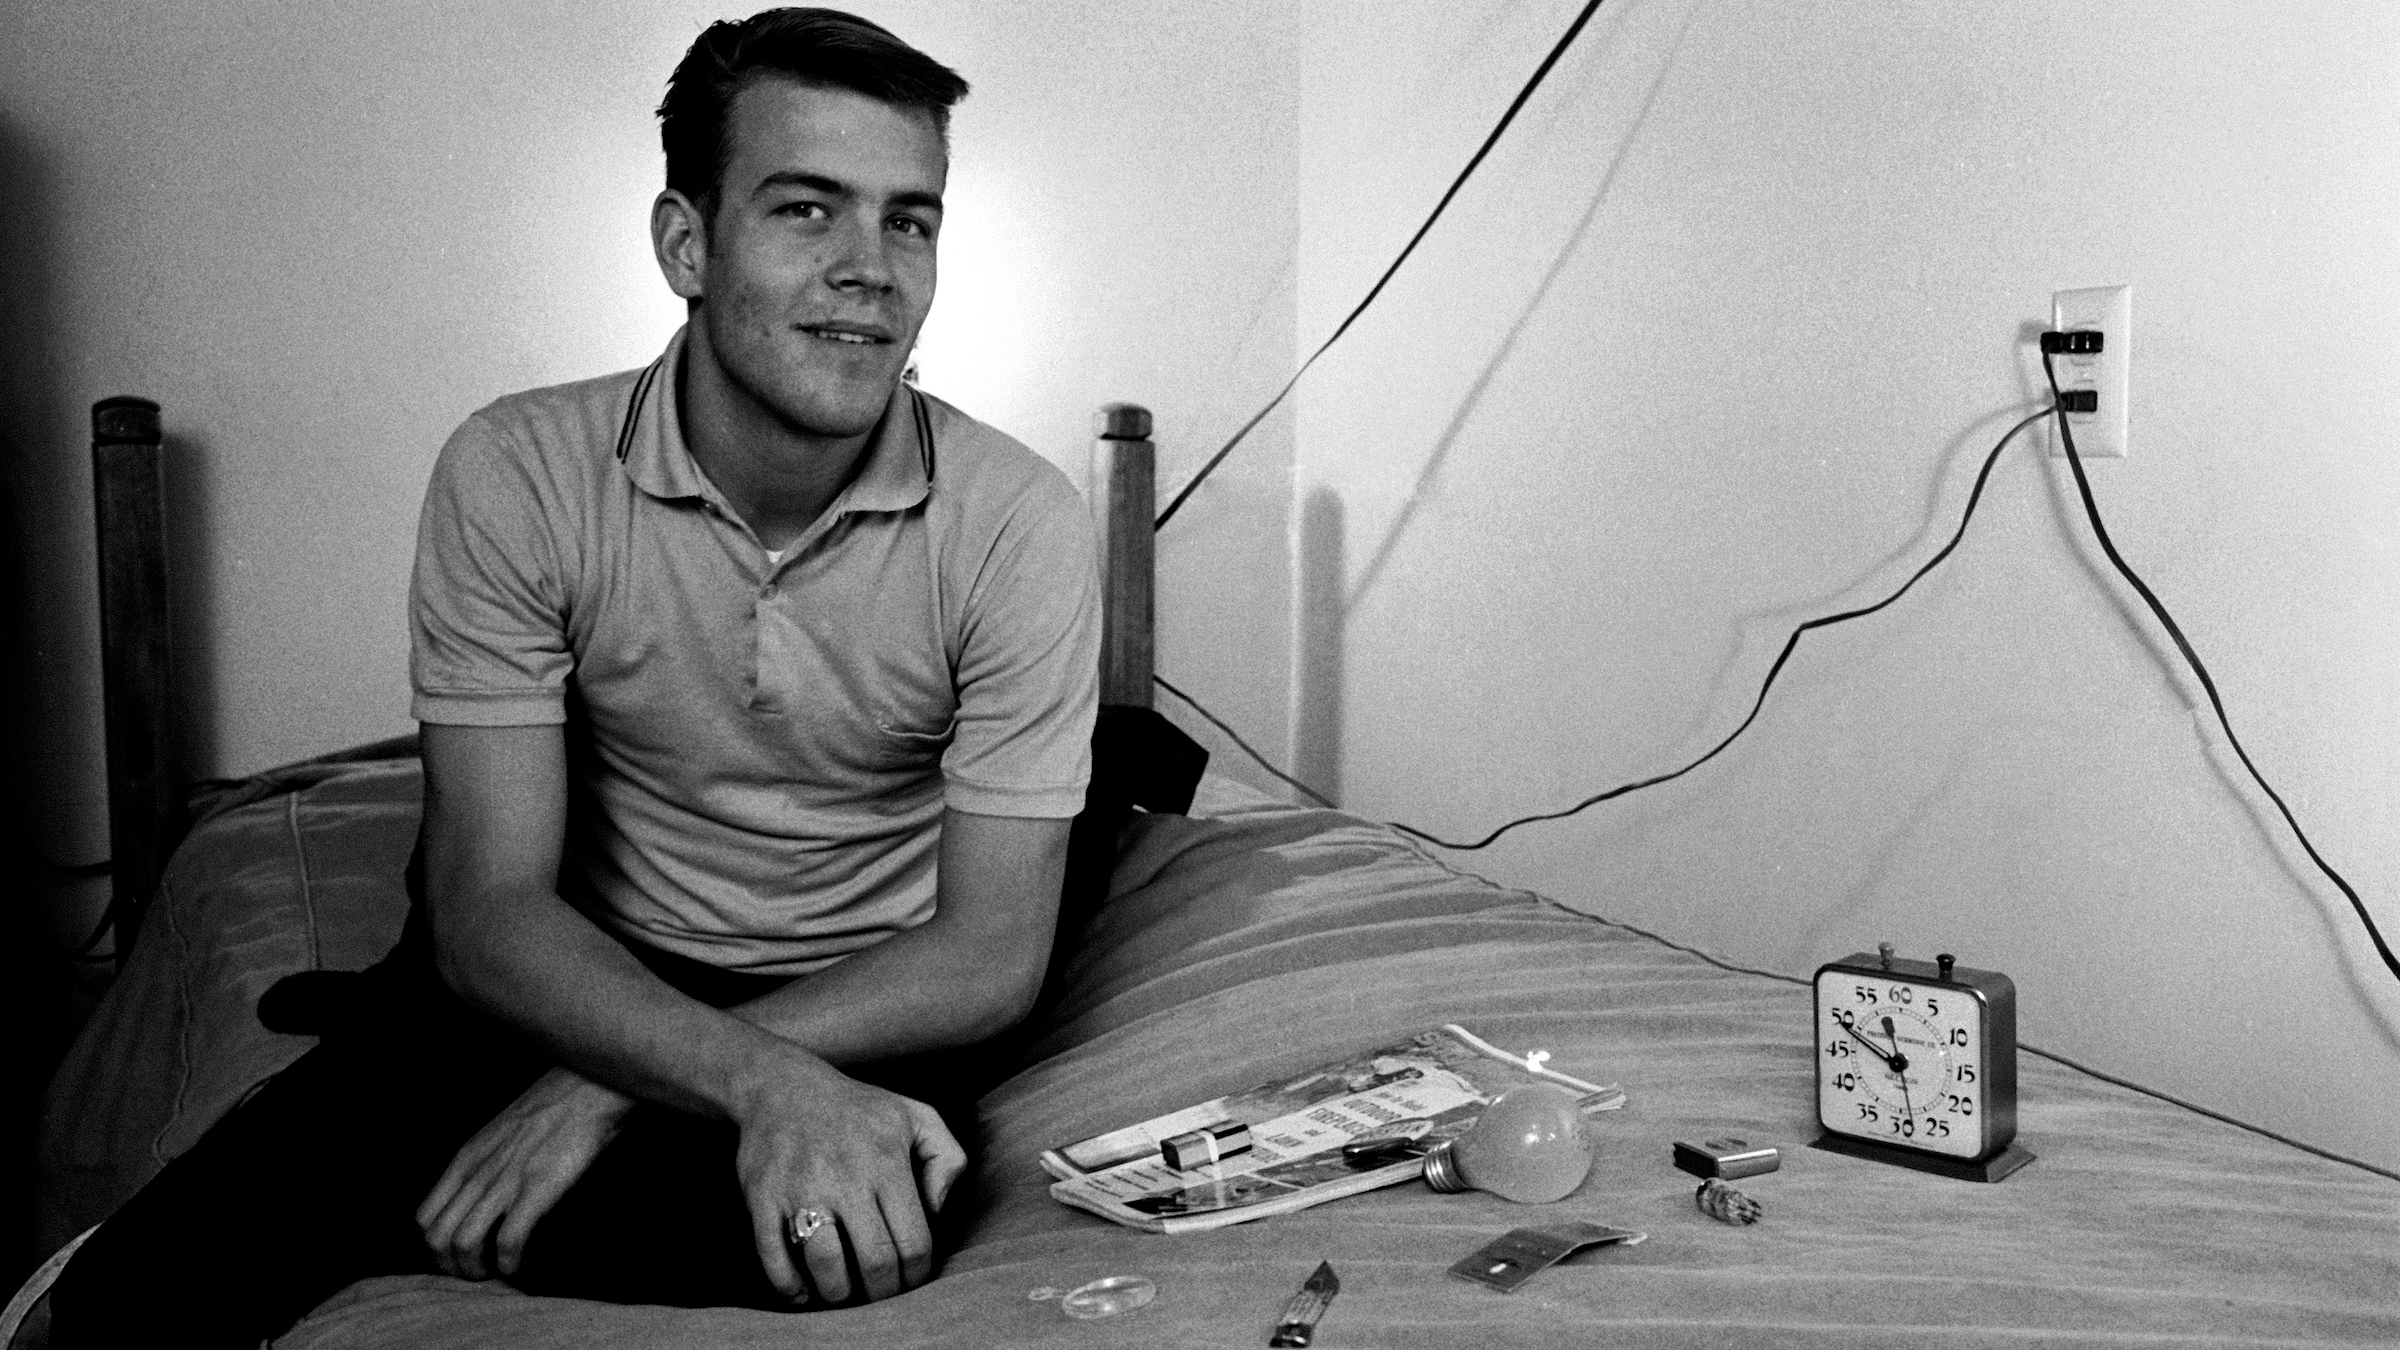 अमेरिकी छात्र रैंडी गार्डनर विभिन्न घरेलू वस्तुओं के बगल में एक बिस्तर पर बैठता है जिसे बाद में नींद की कमी के प्रयोग, सैन डिएगो, कैलिफोर्निया, 1964 के हिस्से के रूप में स्मृति द्वारा पहचानना होगा।